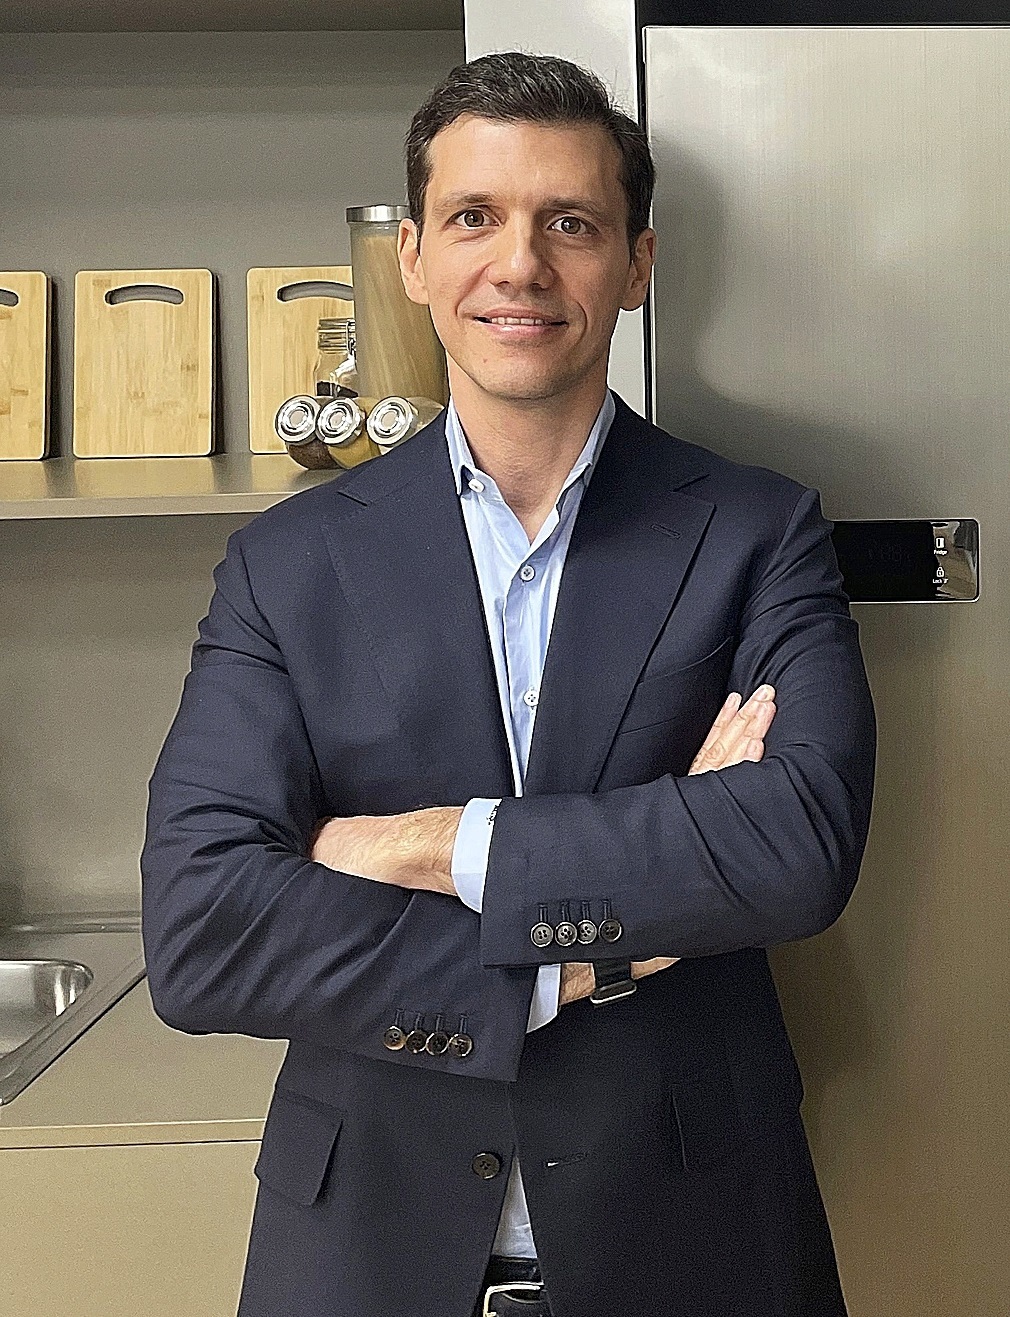 Murat Sapci está instalado en Barcelona desde que hace unas semanas fuera nombrado director general de Beko para los mercados de España y Portugal.  El ejecutivo turco está ligado a la marca del grupo Arçelik desde 2007. Antes trabajó en Procter & Gamble.